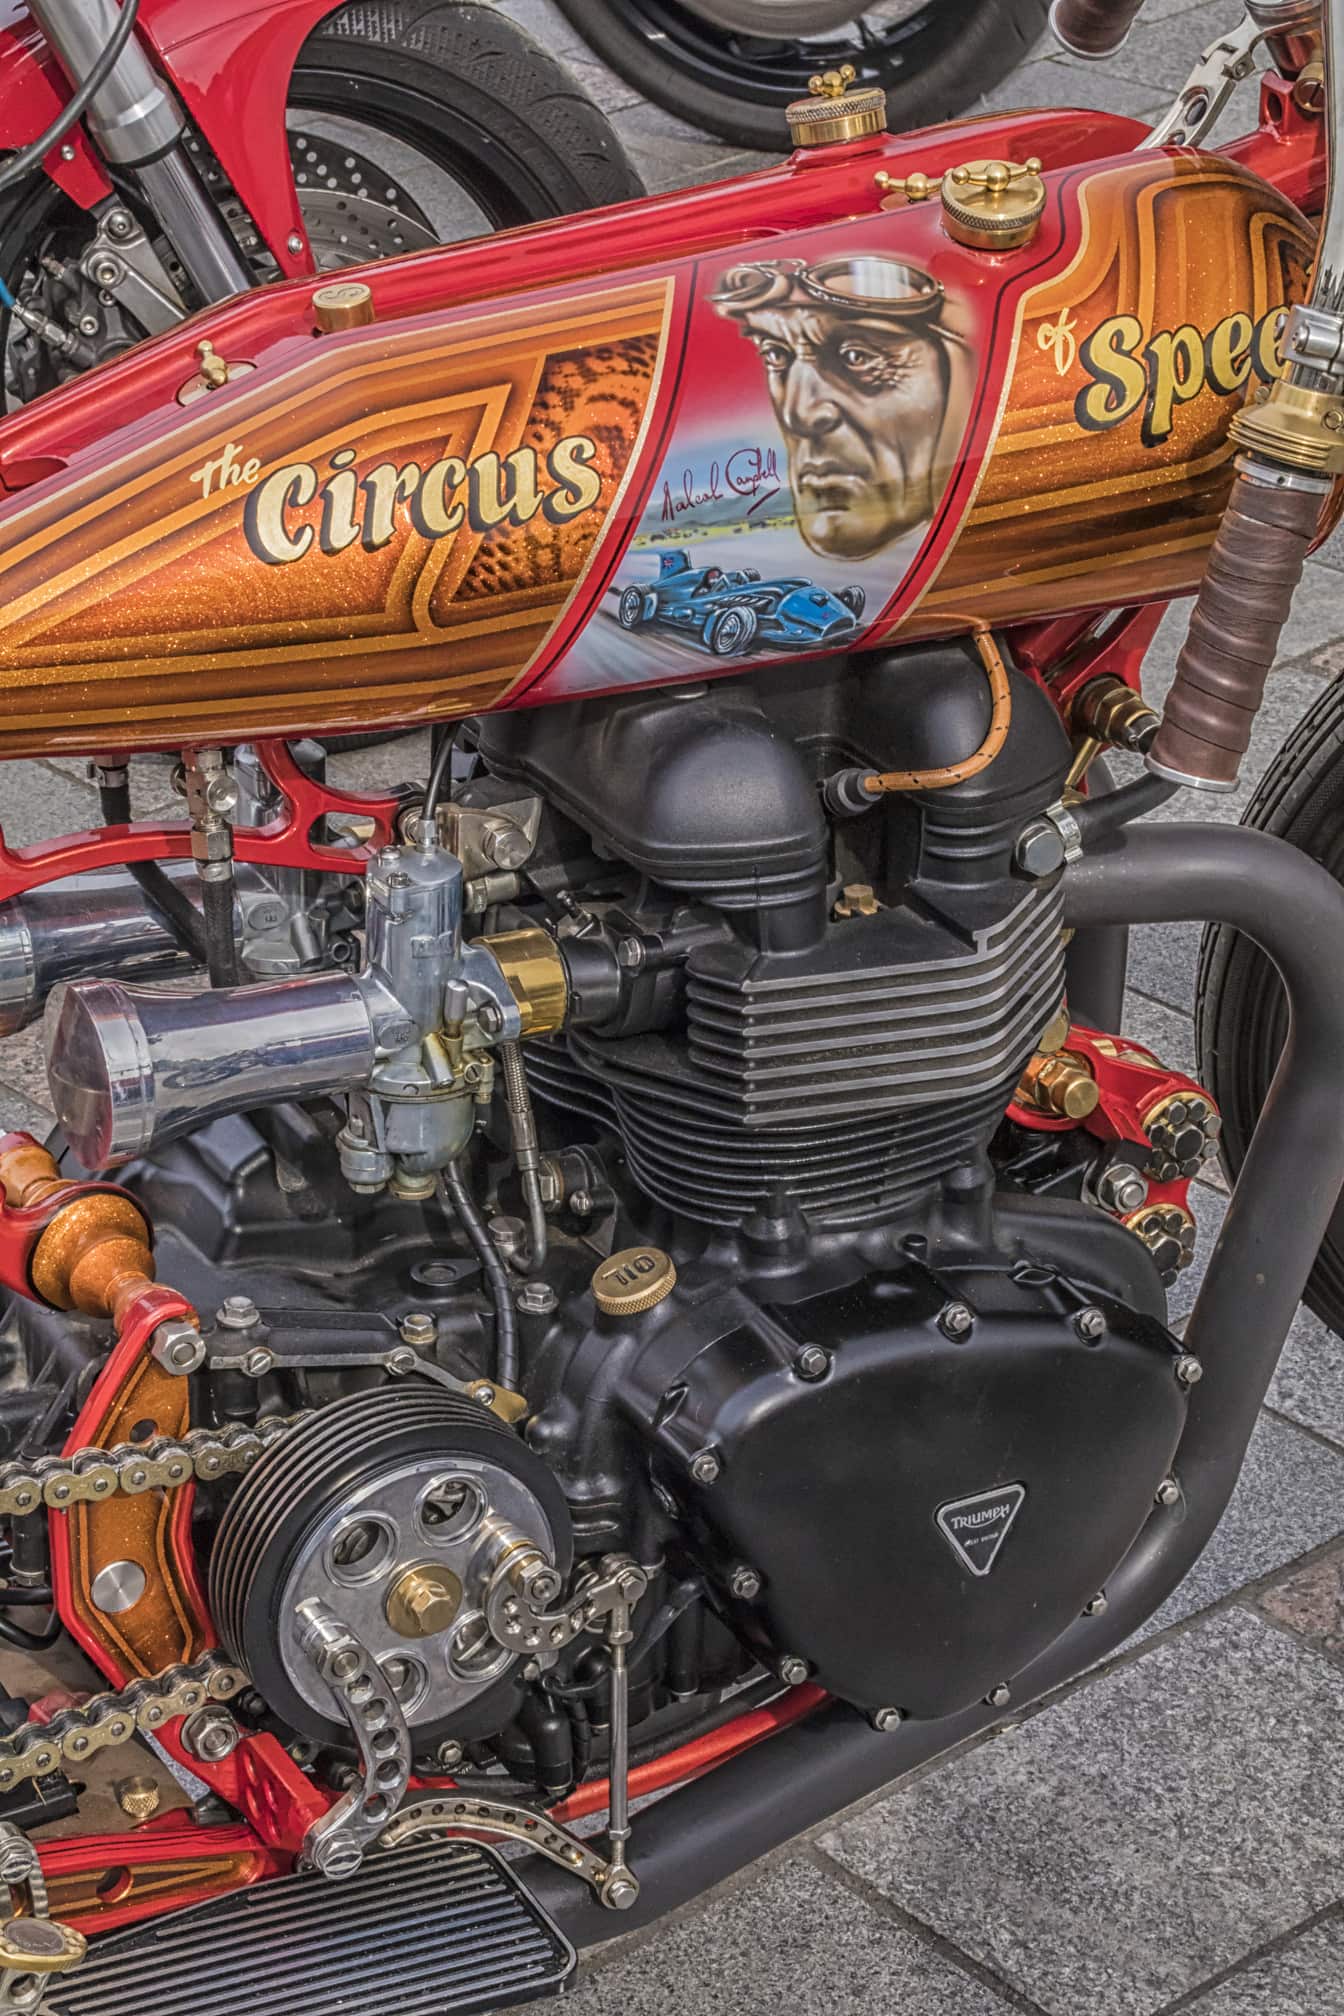 Nærbillede af motorcykelmotor “Cirkus af hastighed”